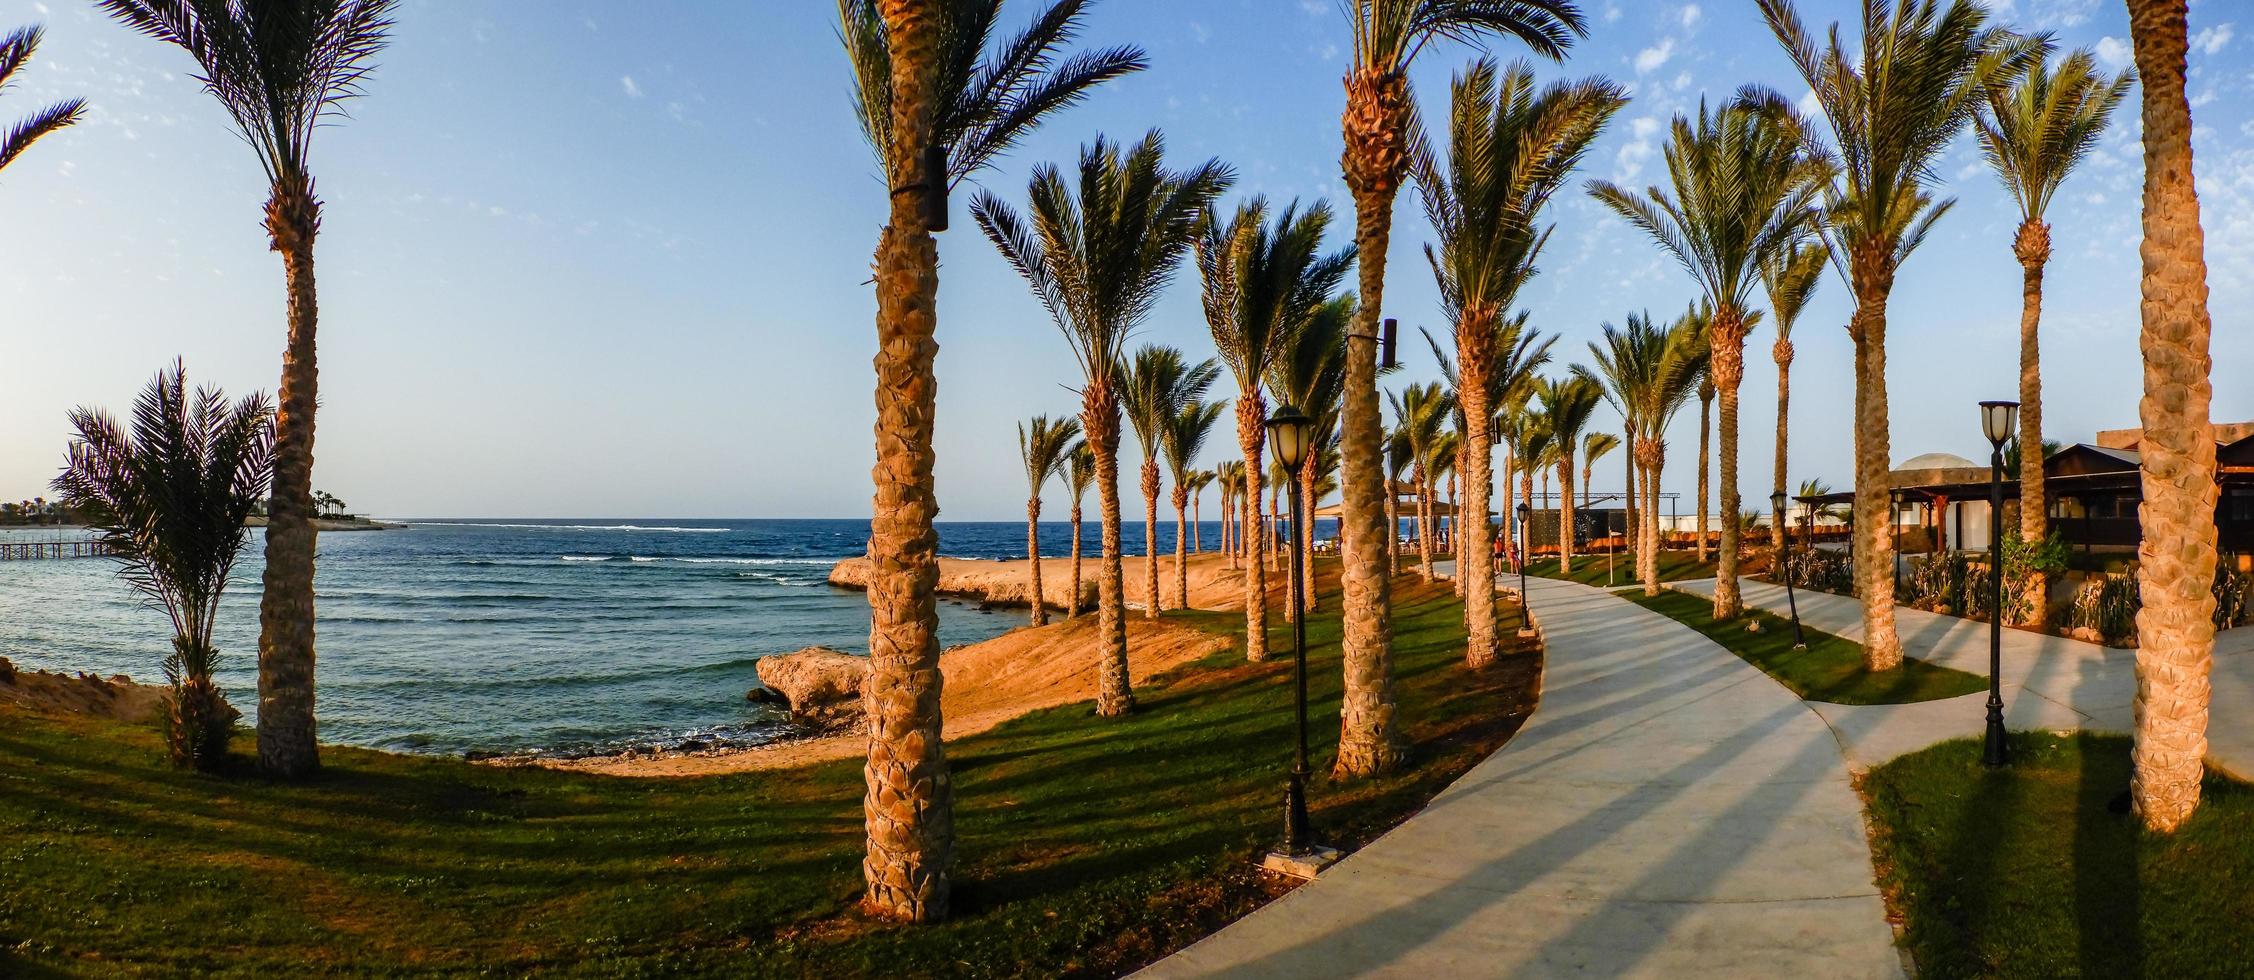 verbazingwekkend strand met gras palm bomen en een pad naar wandelen in de zonsondergang Aan vakantie in Egypte panorama foto